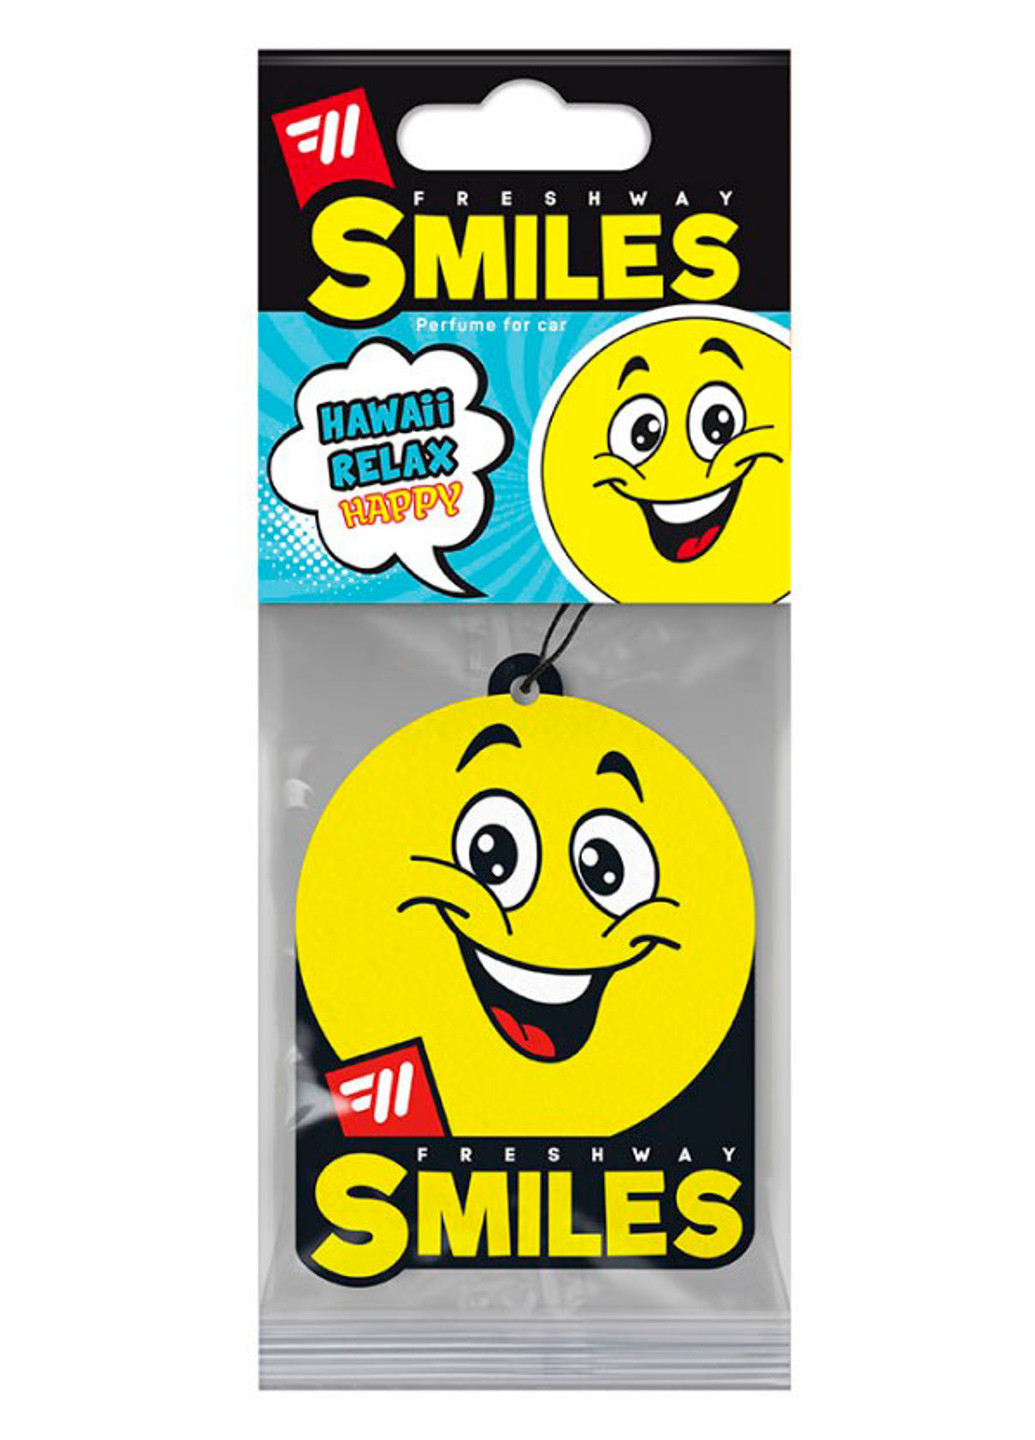 Автомобильный ароматизатор на зеркало заднего вида Smiles Hawaii Relax Fresh Way (220025755)